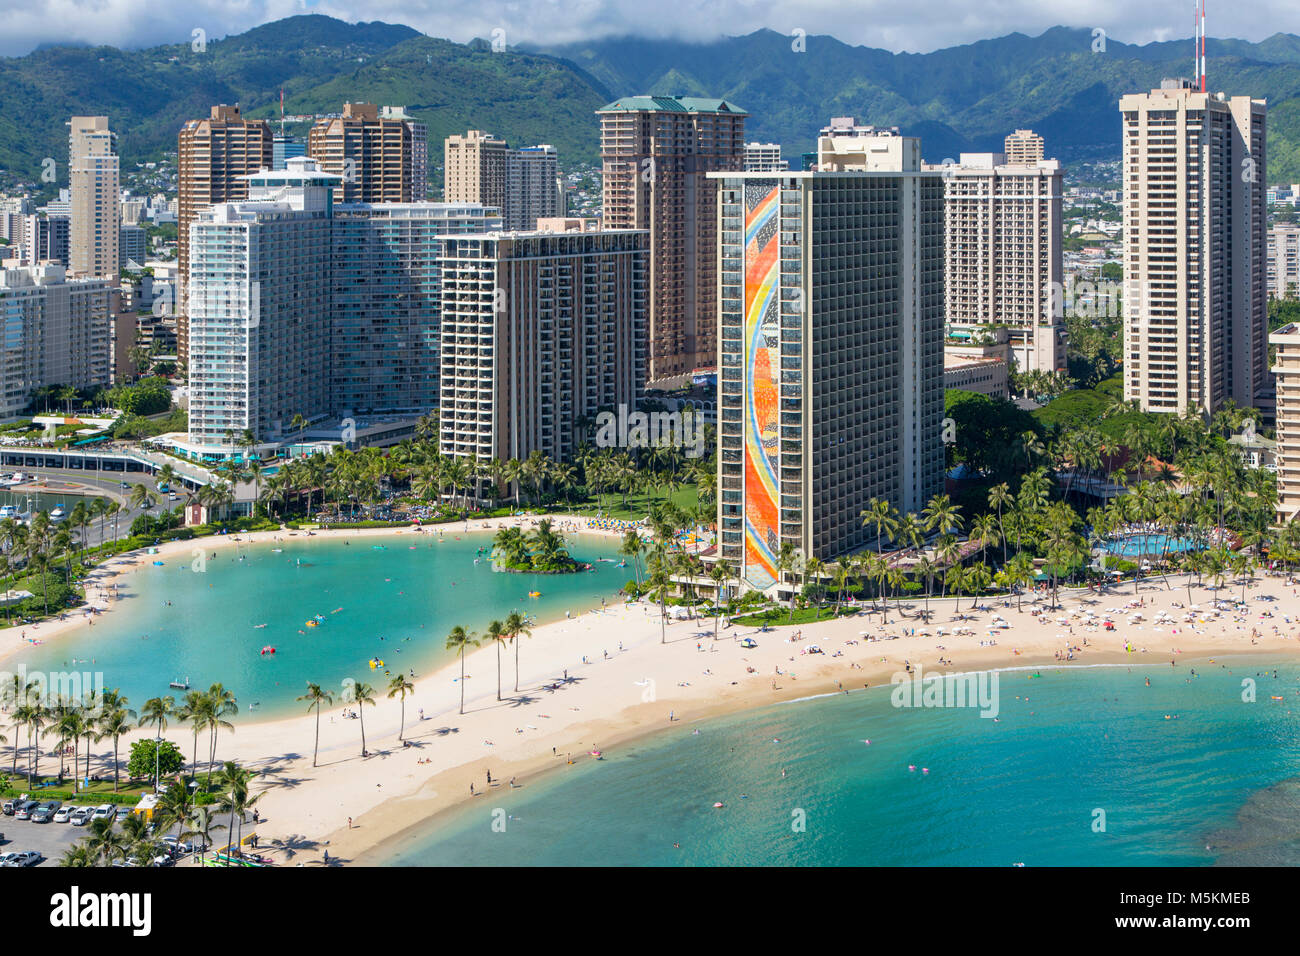 Hilton Hawaiian Village Waikiki Beach Resort in Honolulu: Find